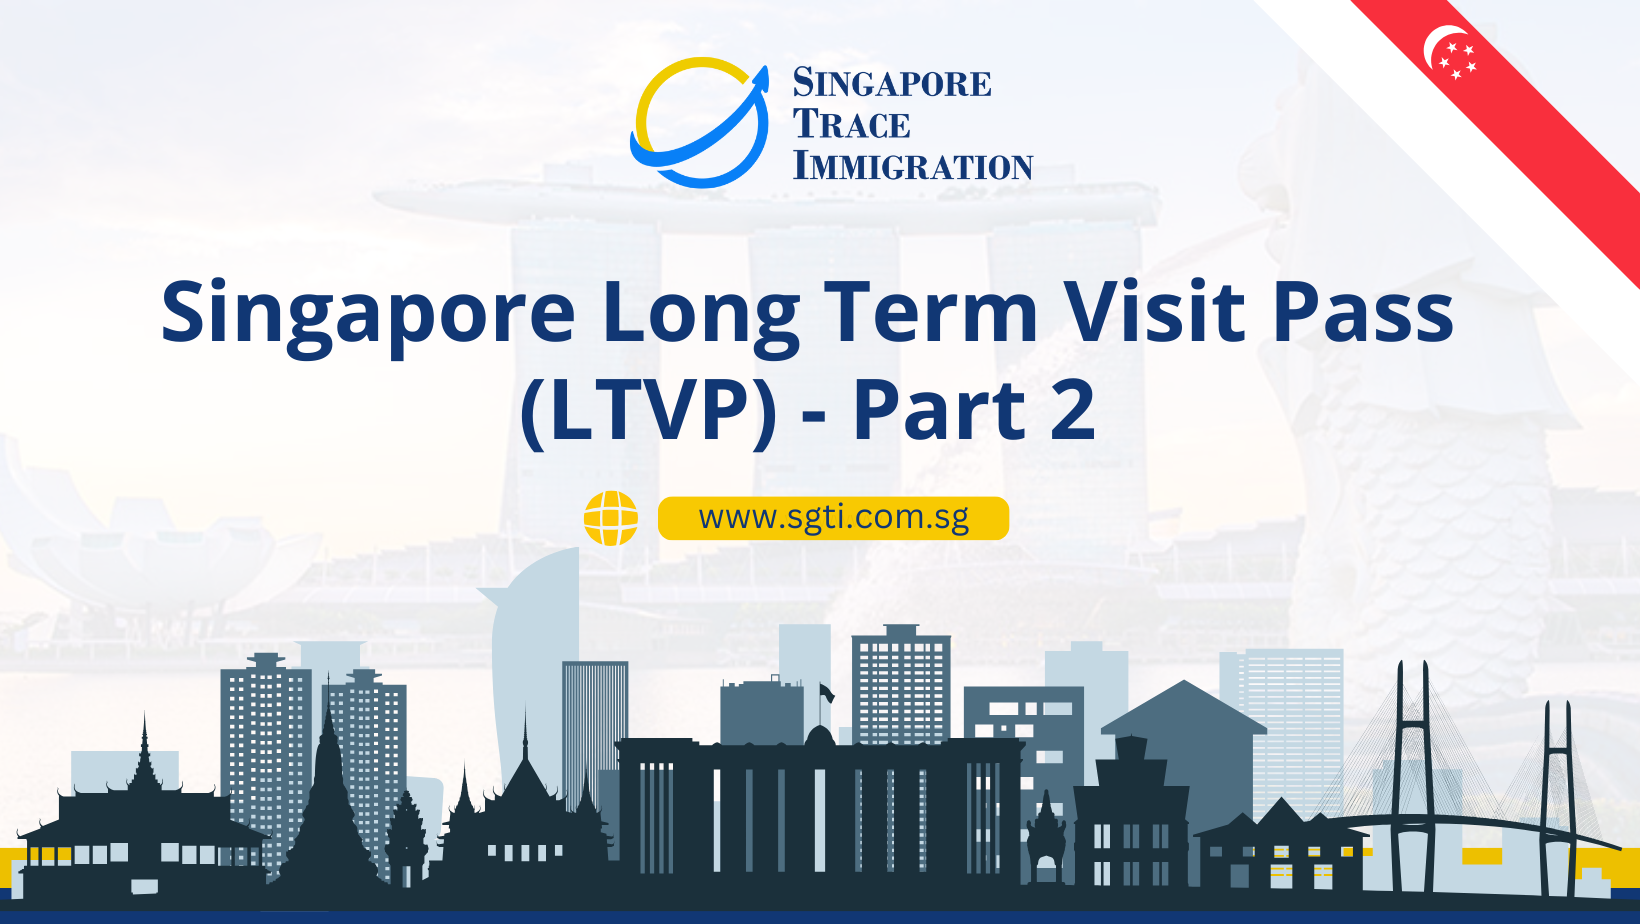 Singapore Long-Term Visit Pass (LTVP) – Part 2